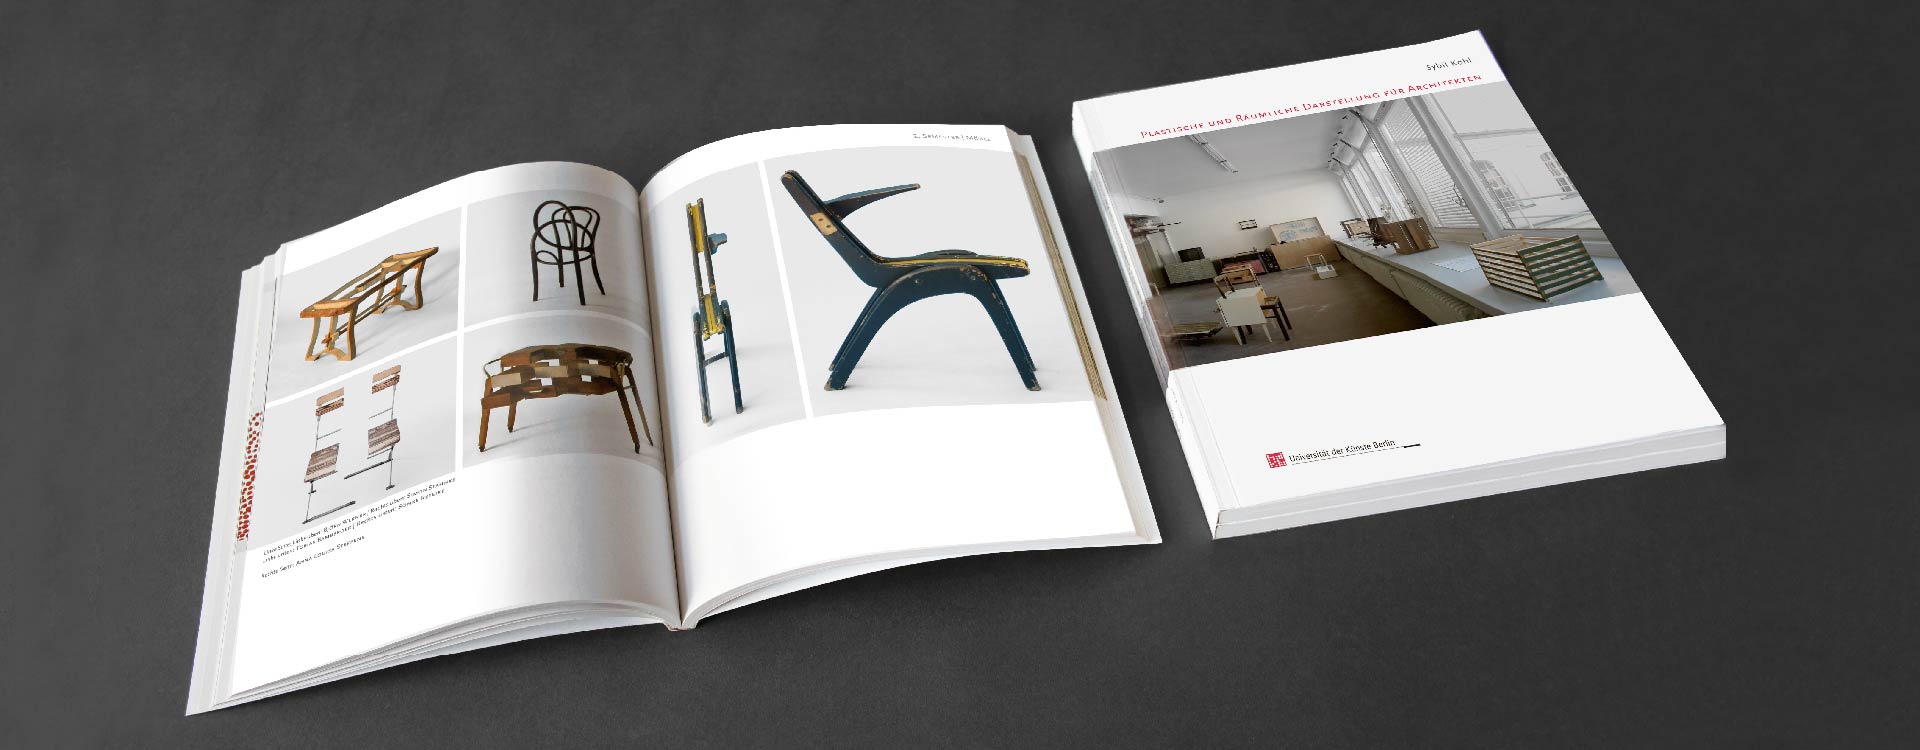 Book Plastische und Räumliche Darstellung für Architekten, publisher UdK, Berlin; Design: Kattrin Richter | Graphic Design Studio